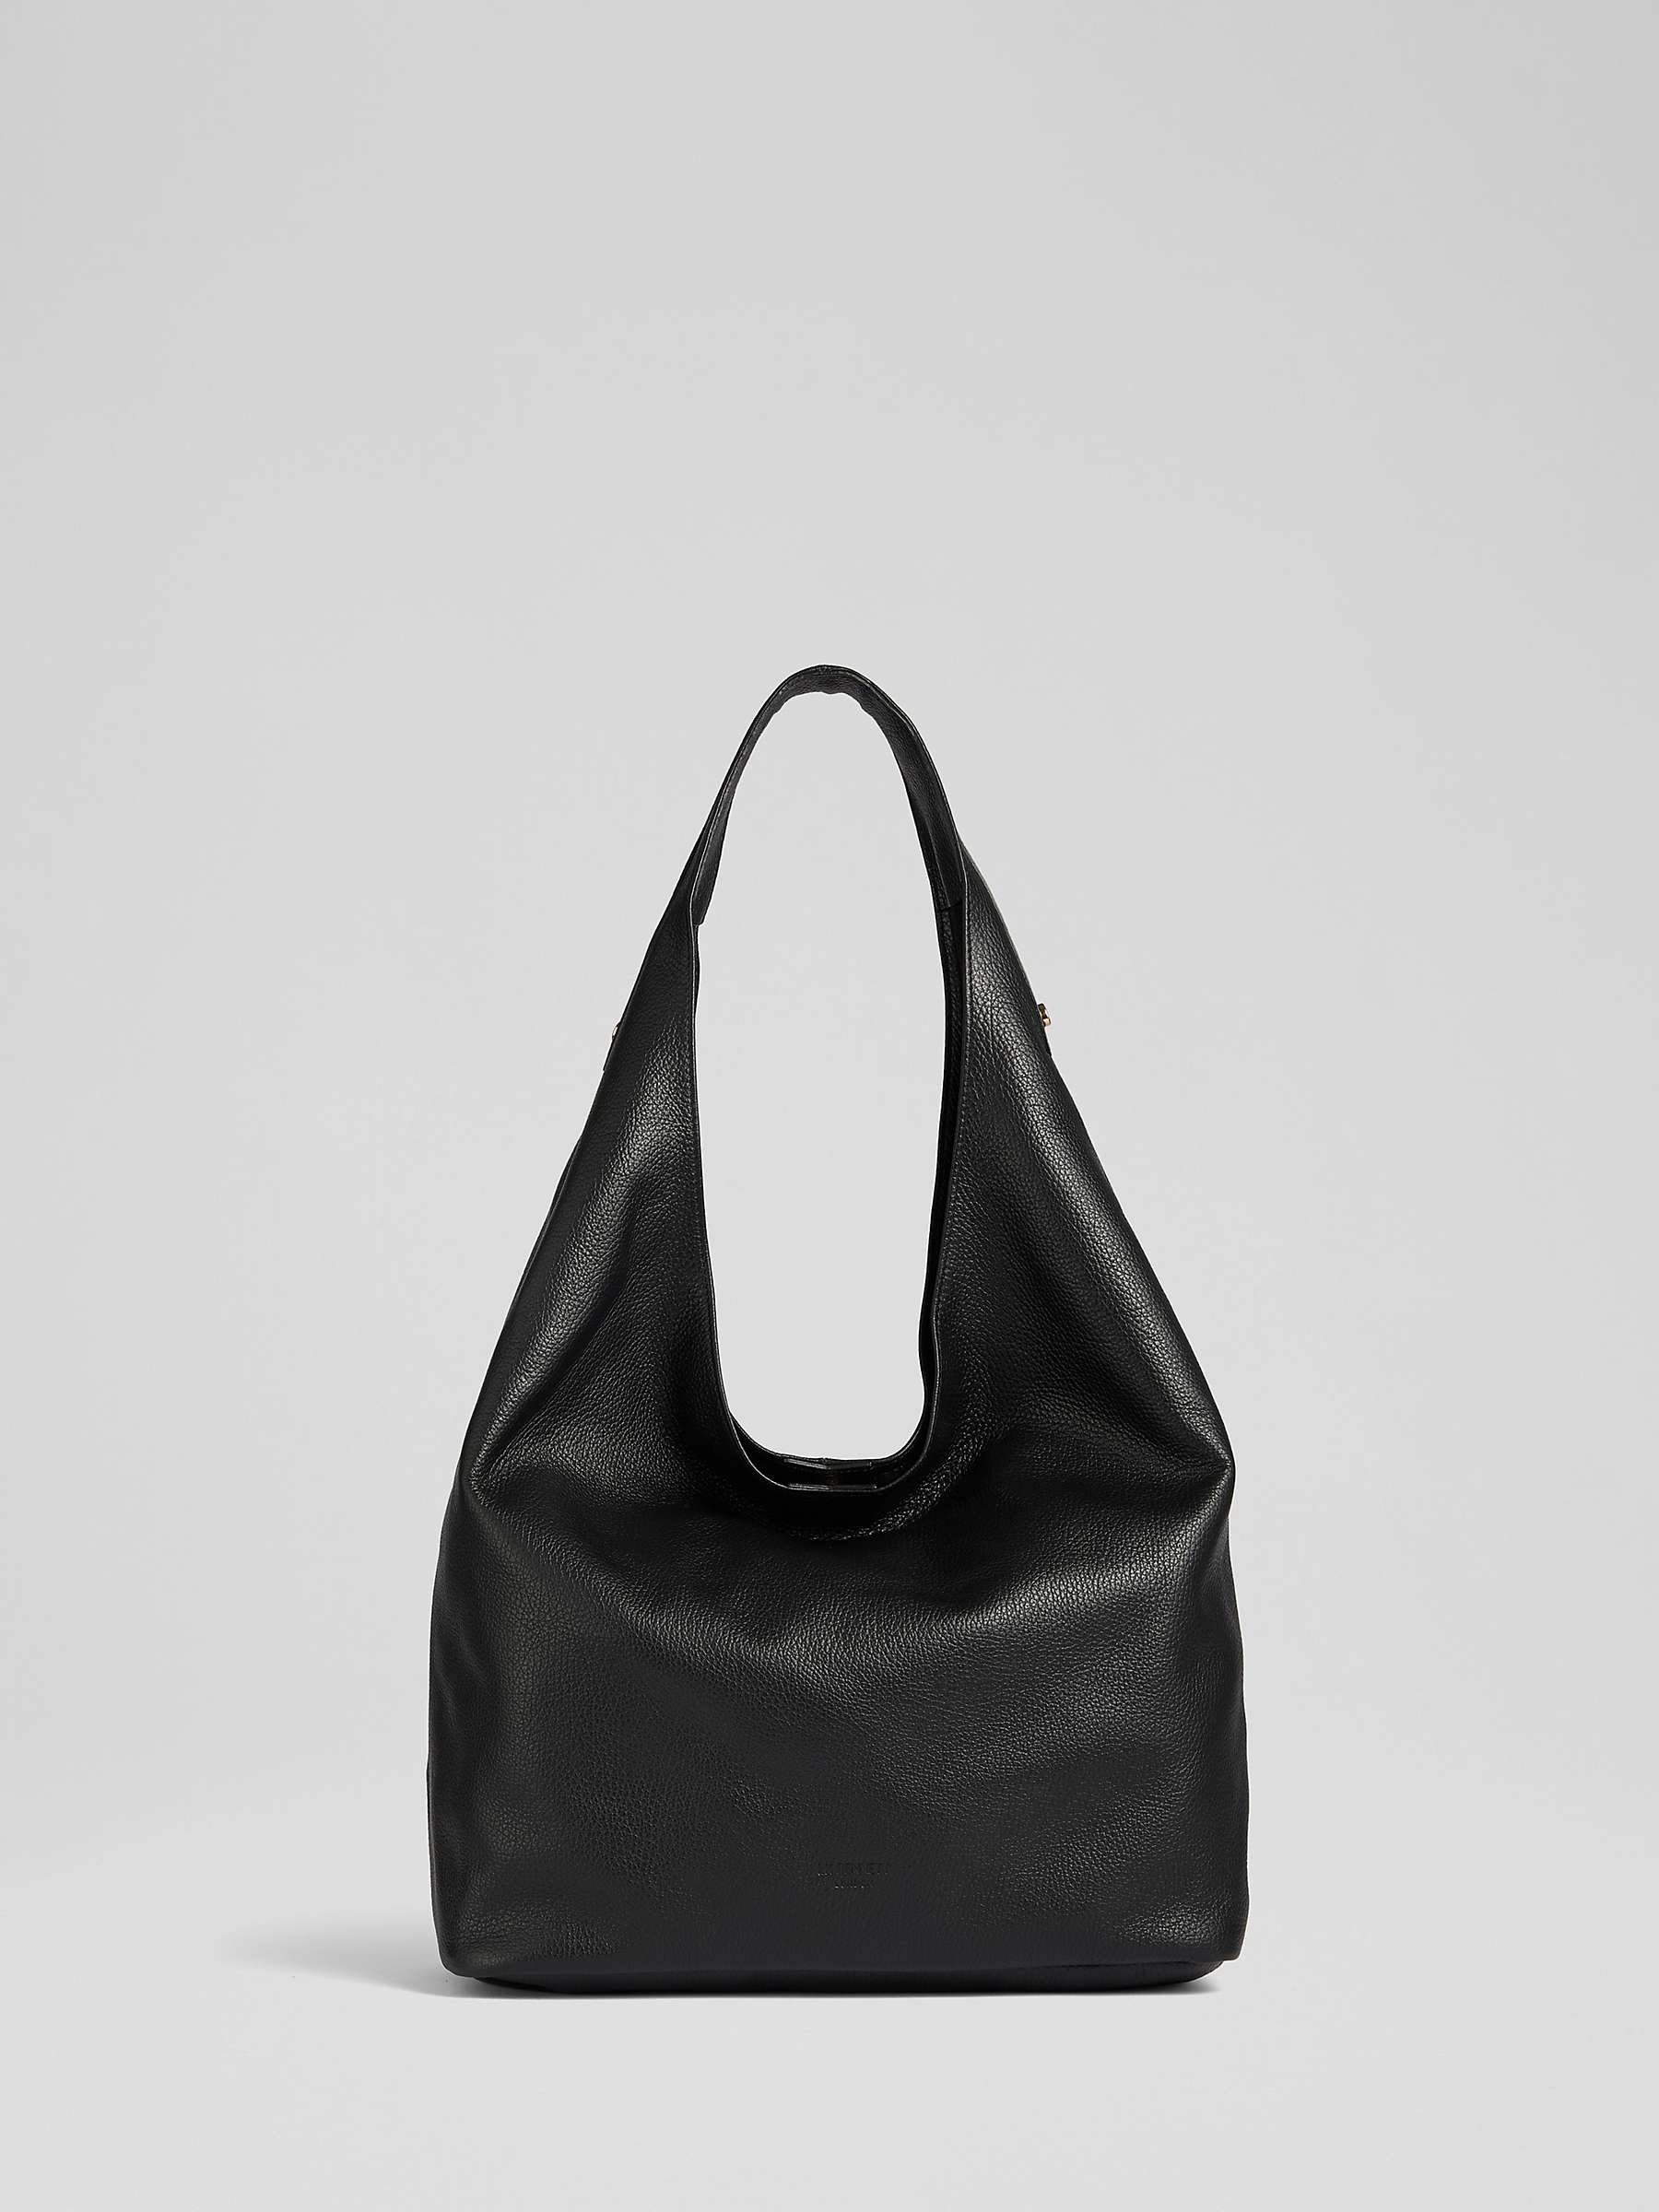 L.K.Bennett Soula Grainy Leather Shoulder Bag, Black at John Lewis ...